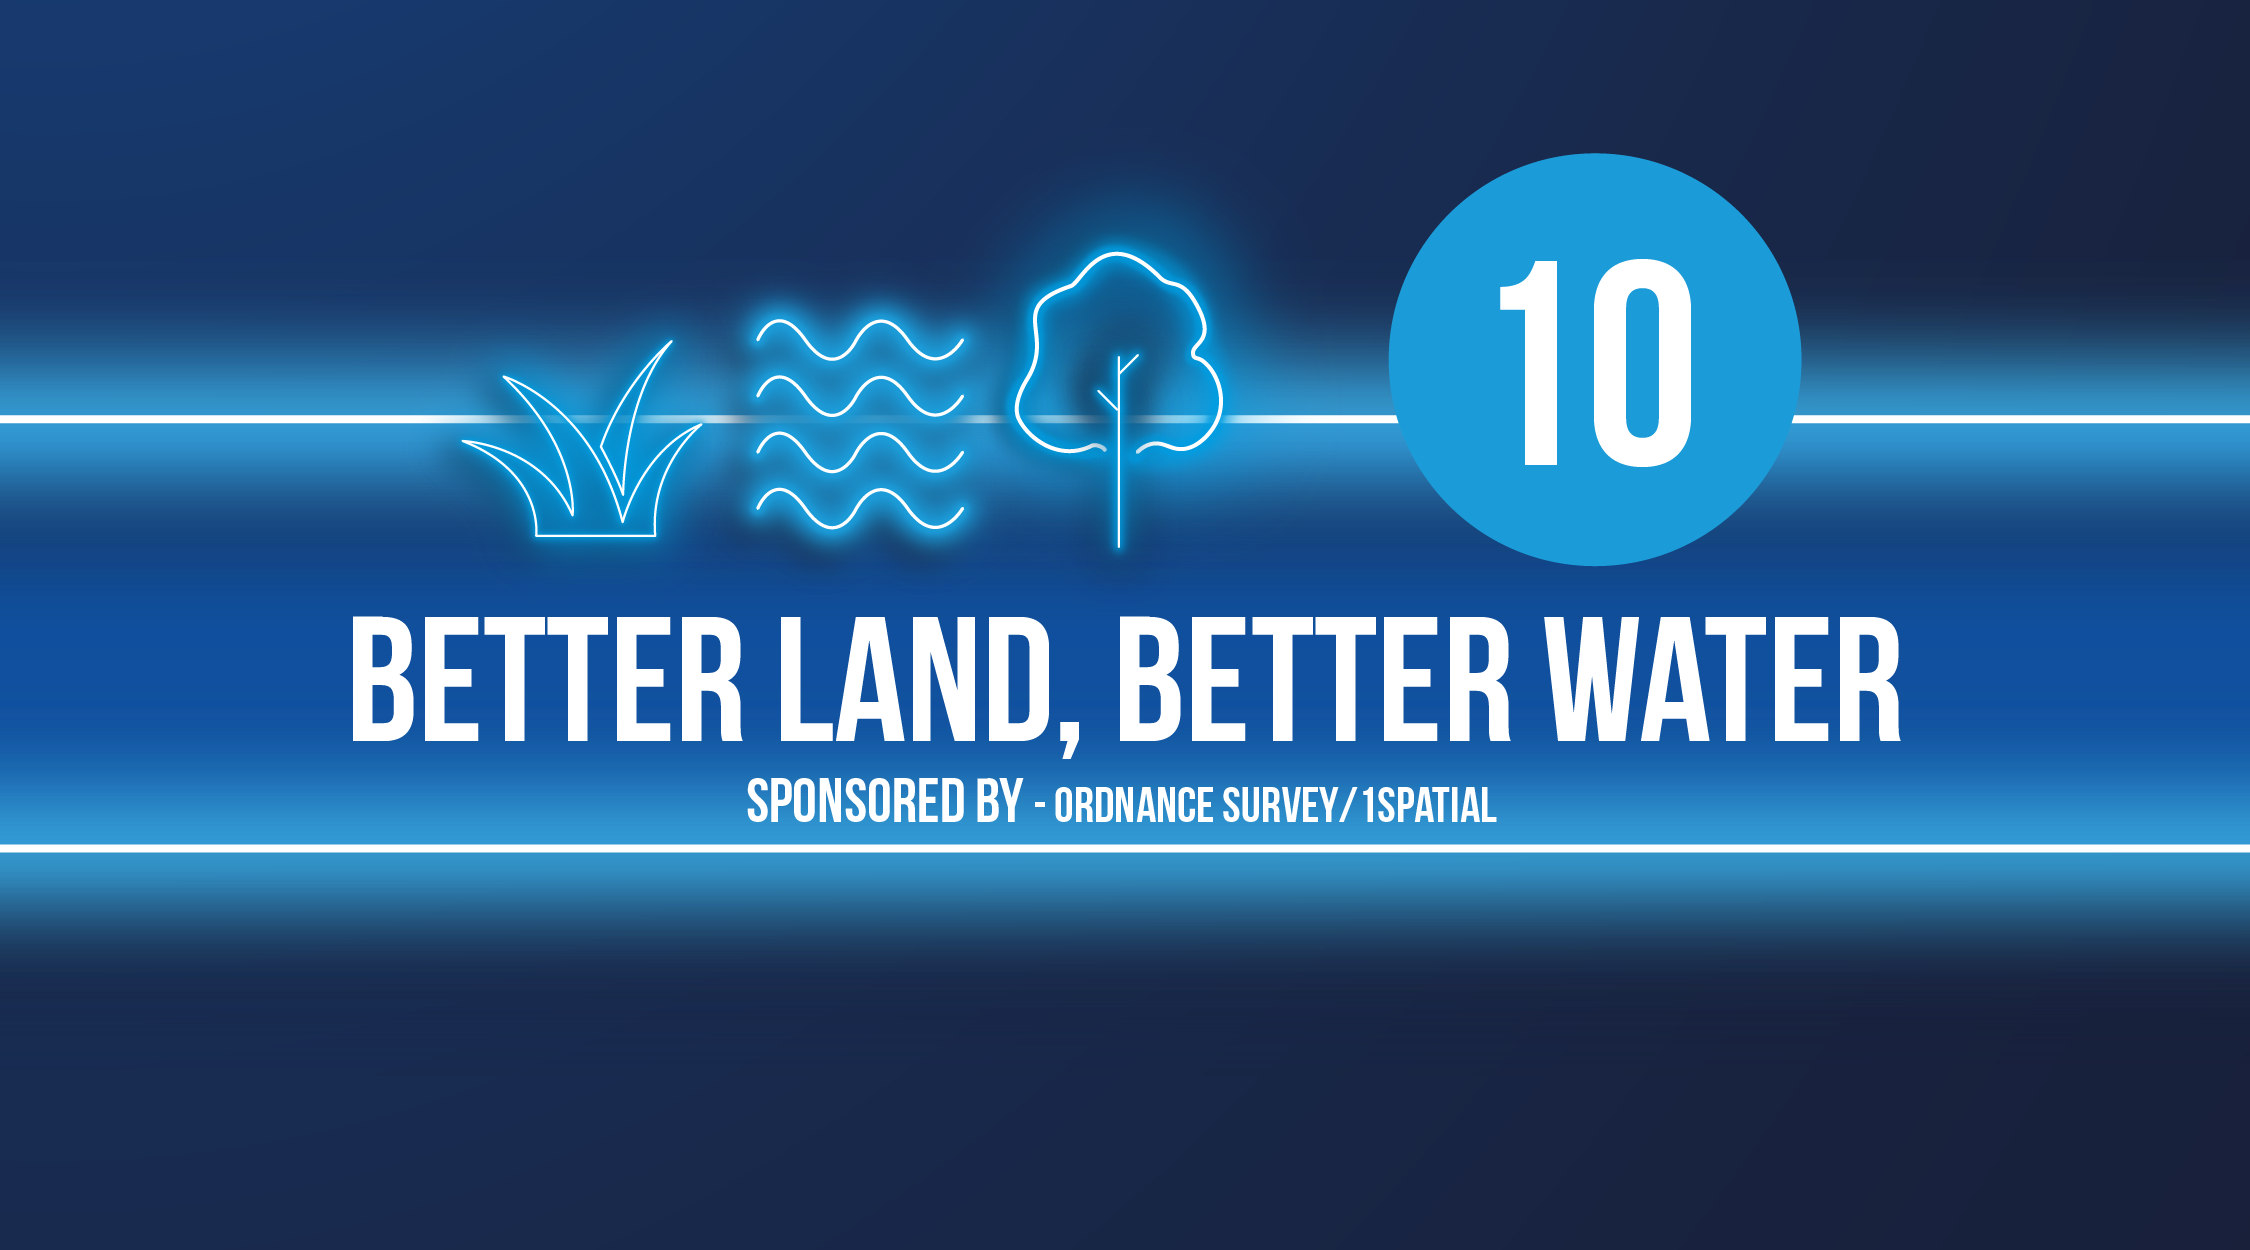 Better land, better water